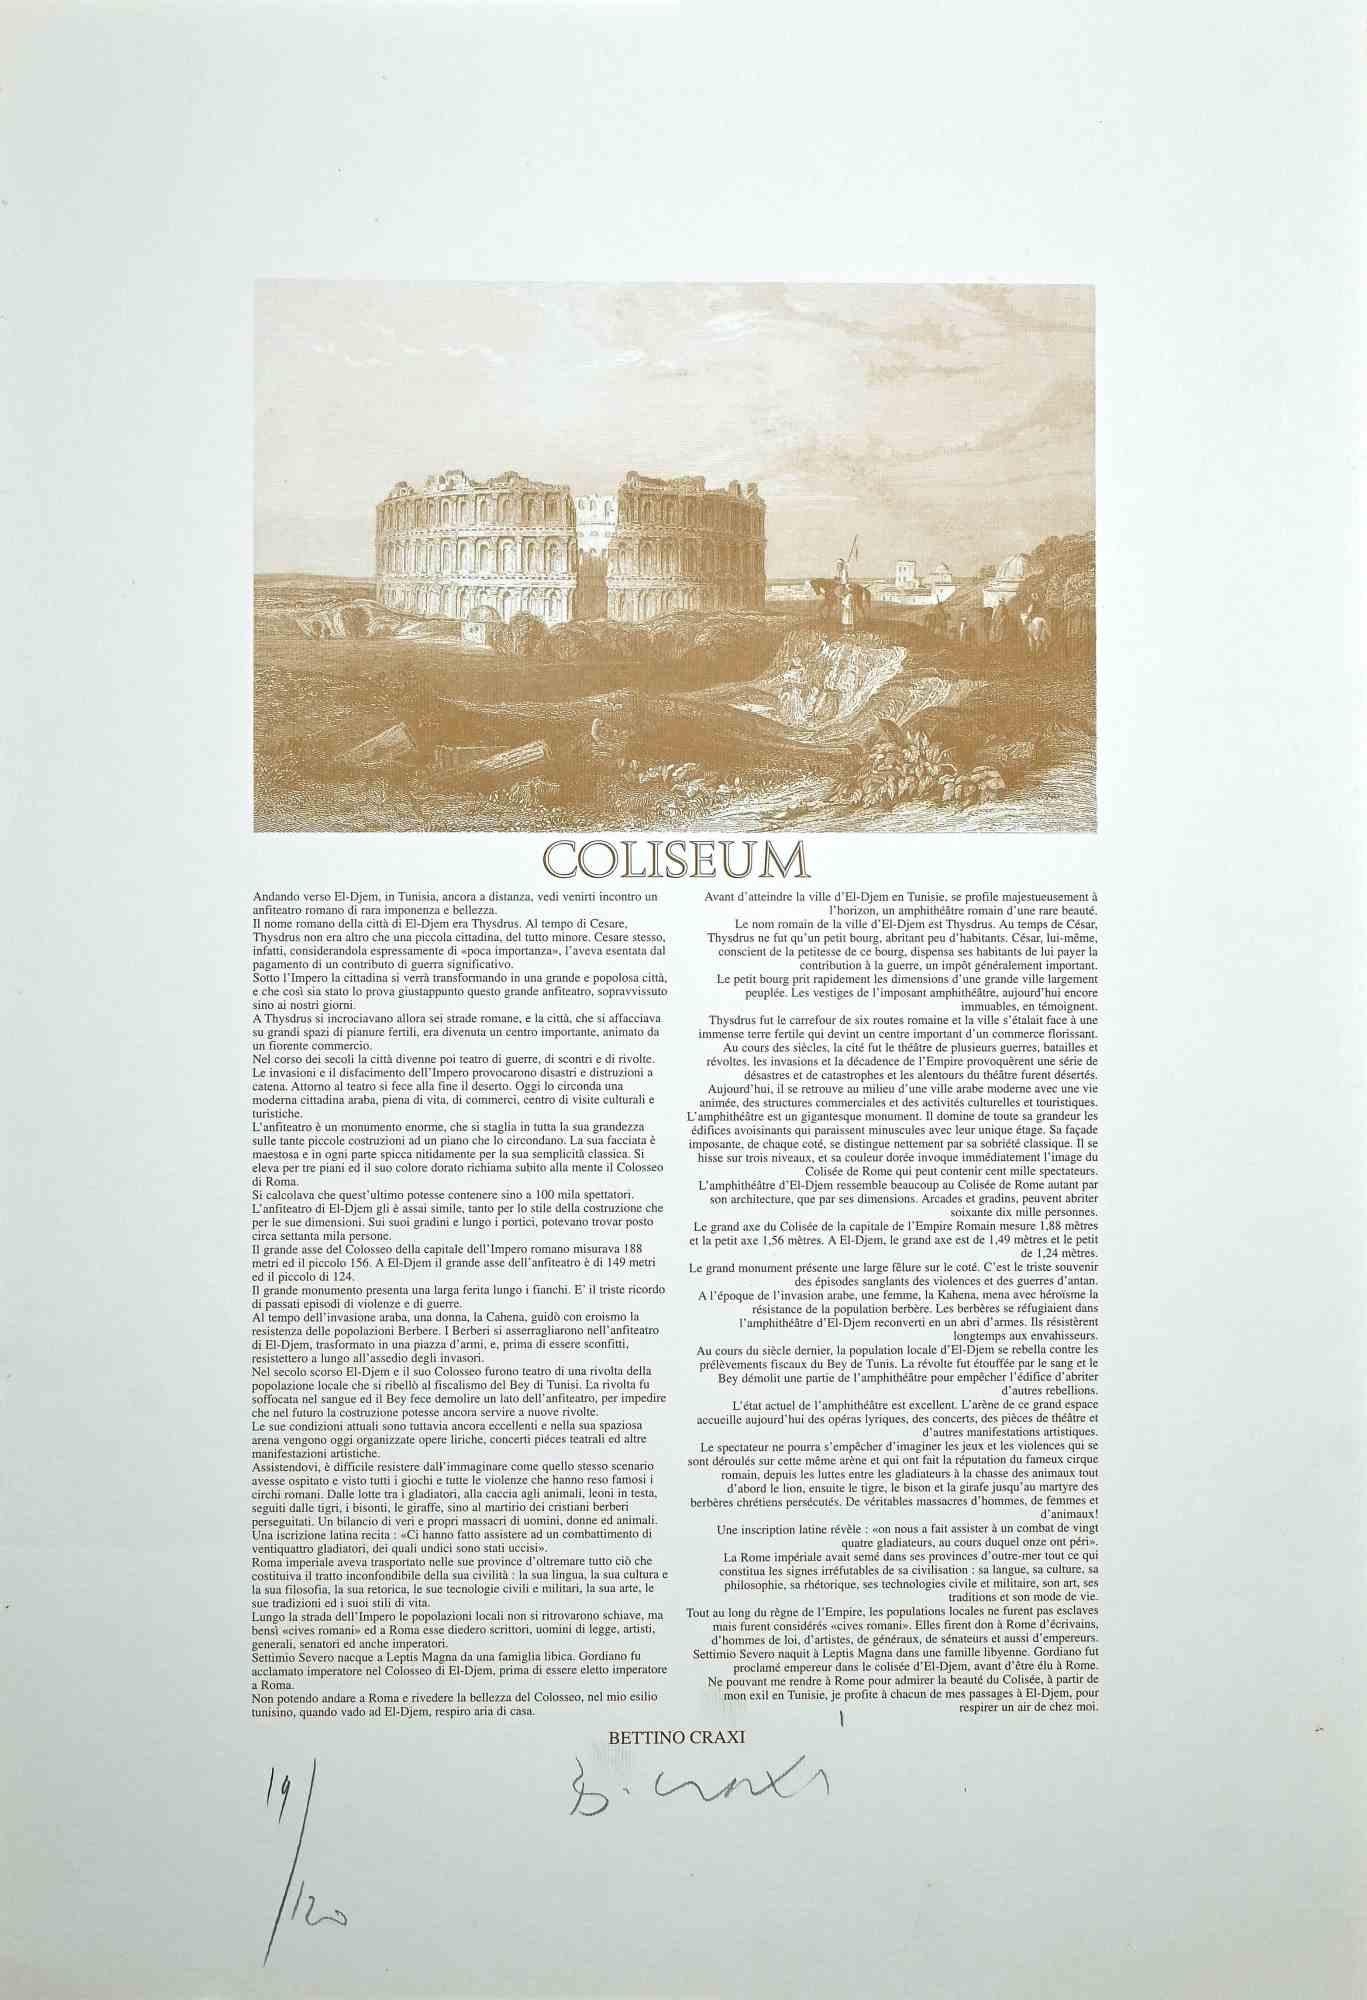 Coliseum ist eine wunderbare Lithographie und Offsetdruck des italienischen Politikers Bettino Craxi.

Handsigniert mit Bleistift am unteren rechten Rand.

Ein kostbares Exemplar, links unten nummeriert, Auflage 19/120 Exemplare.

Dieser